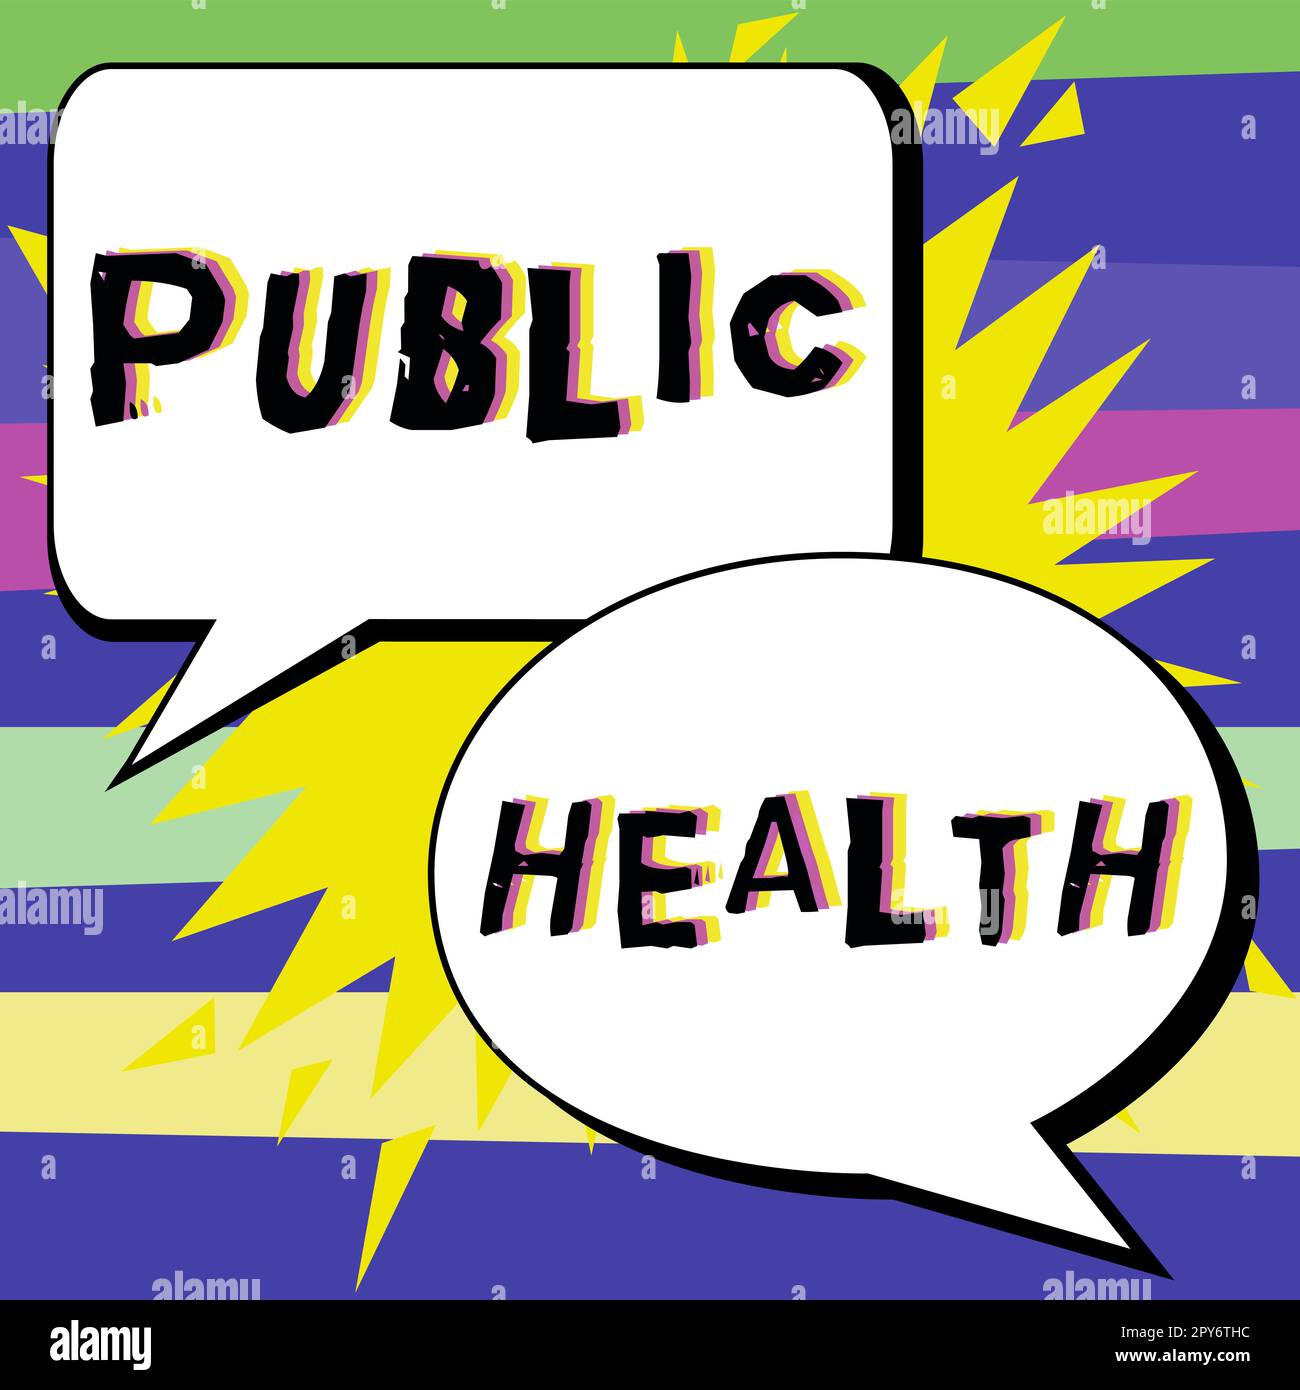 Inspiration zeigt Zeichen Public Health. Geschäftskonzept zur Förderung einer gesunden Lebensweise für die Gemeinschaft und ihre Menschen Stockfoto